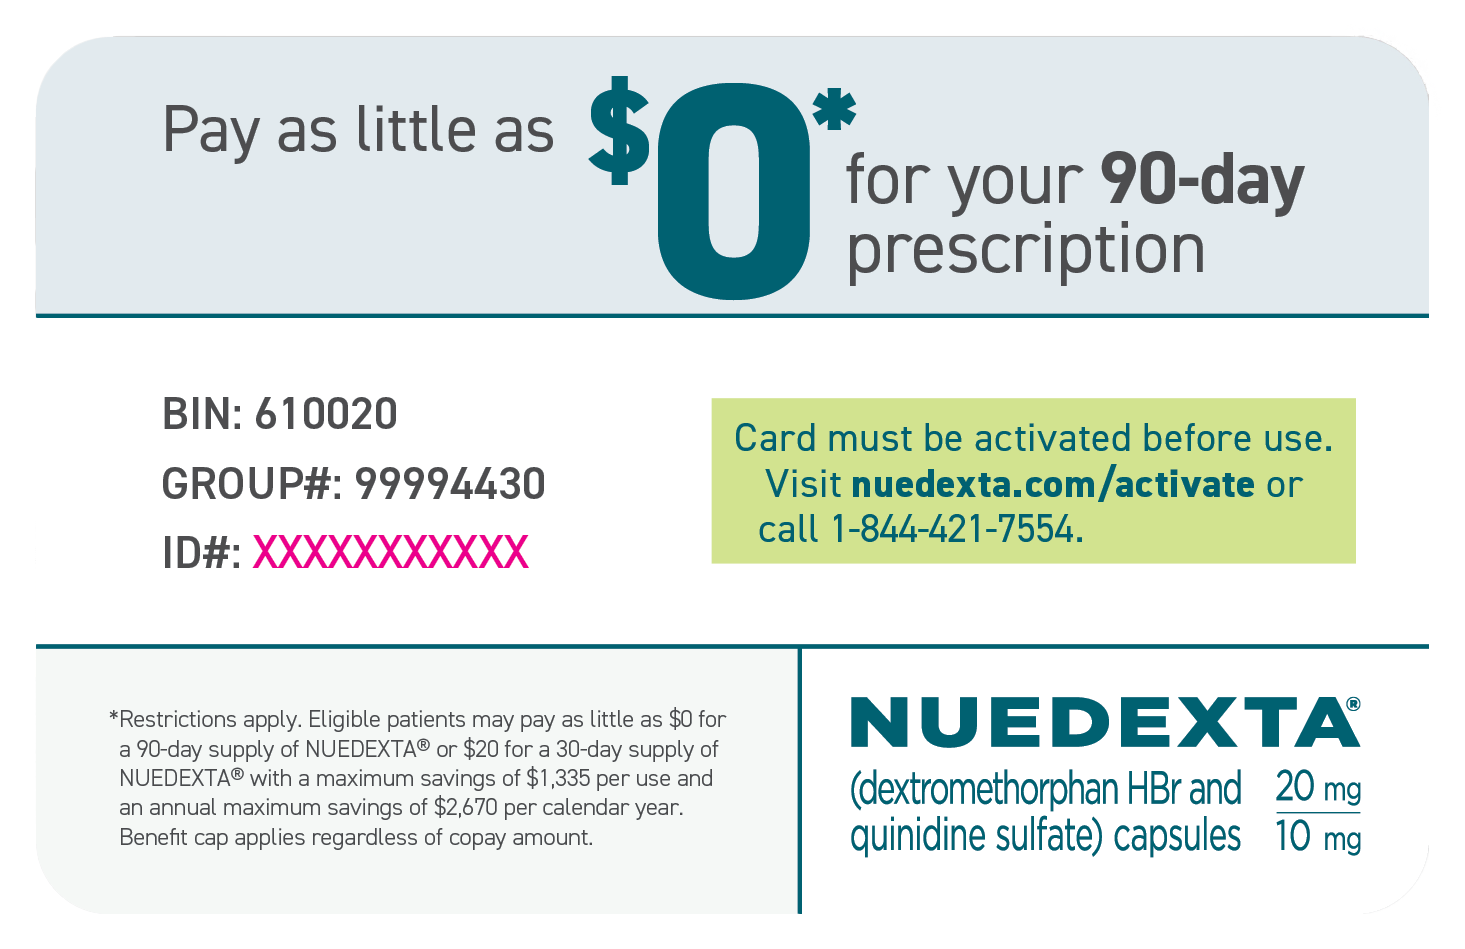 Example image of Nuedexta savings card